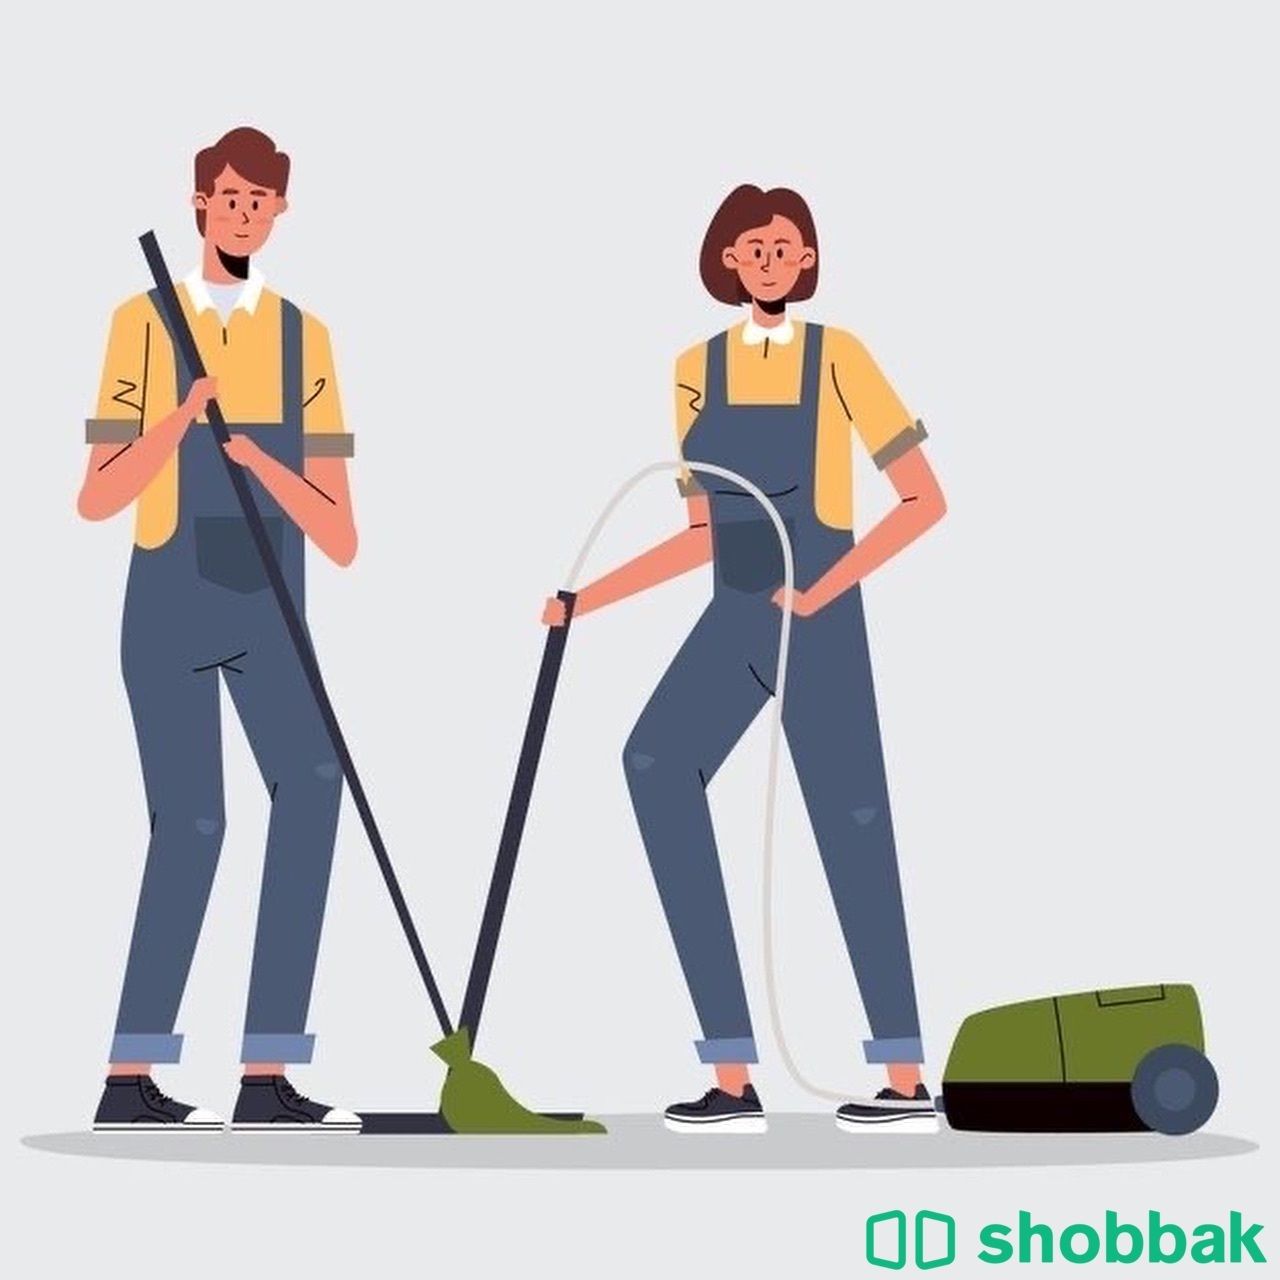 احجز عمالتك المنزلية Shobbak Saudi Arabia